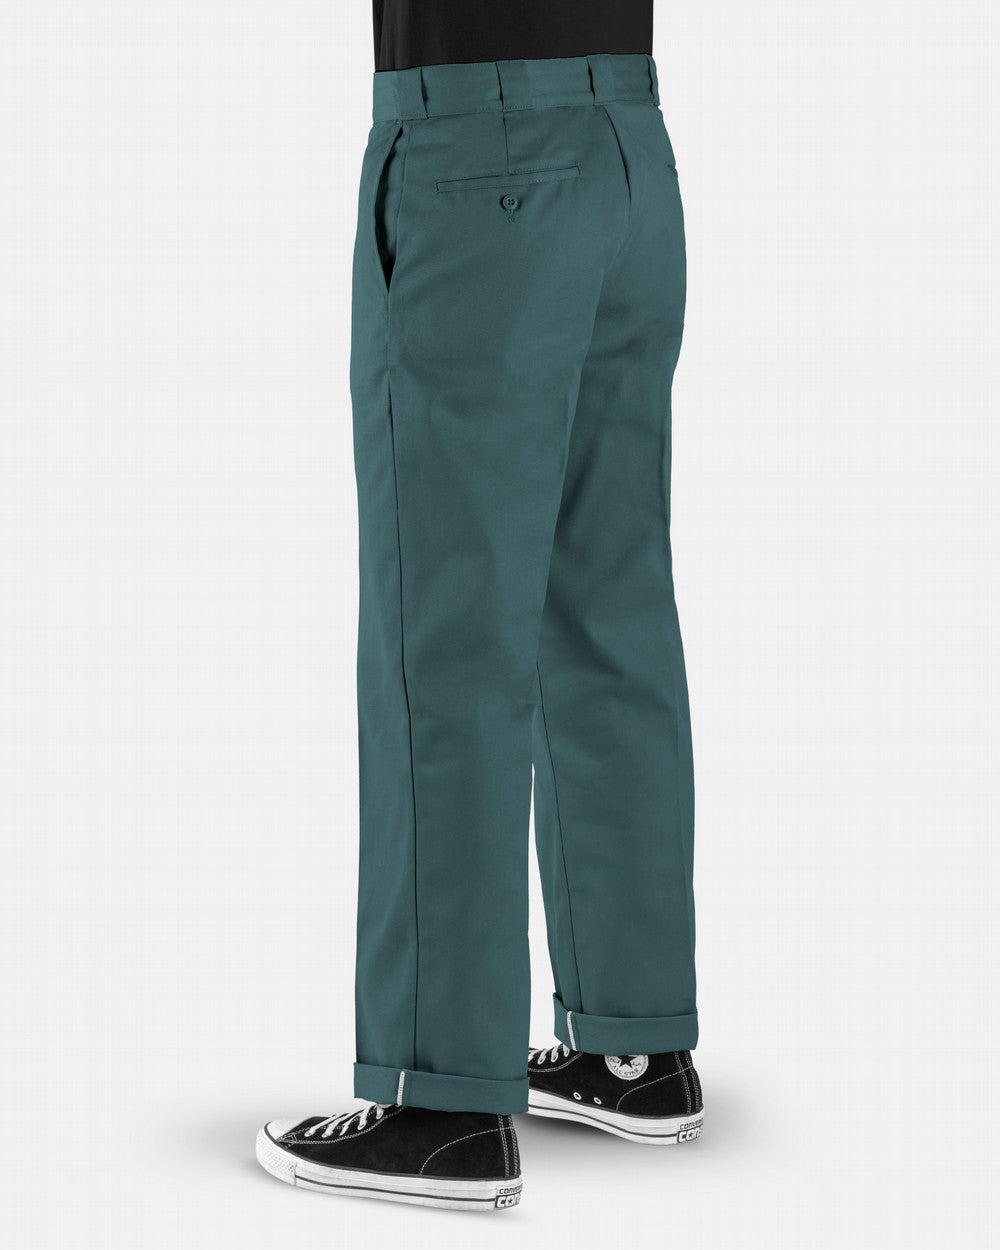 Dickies Men's Original 874® Work Pants 'Lincoln Green